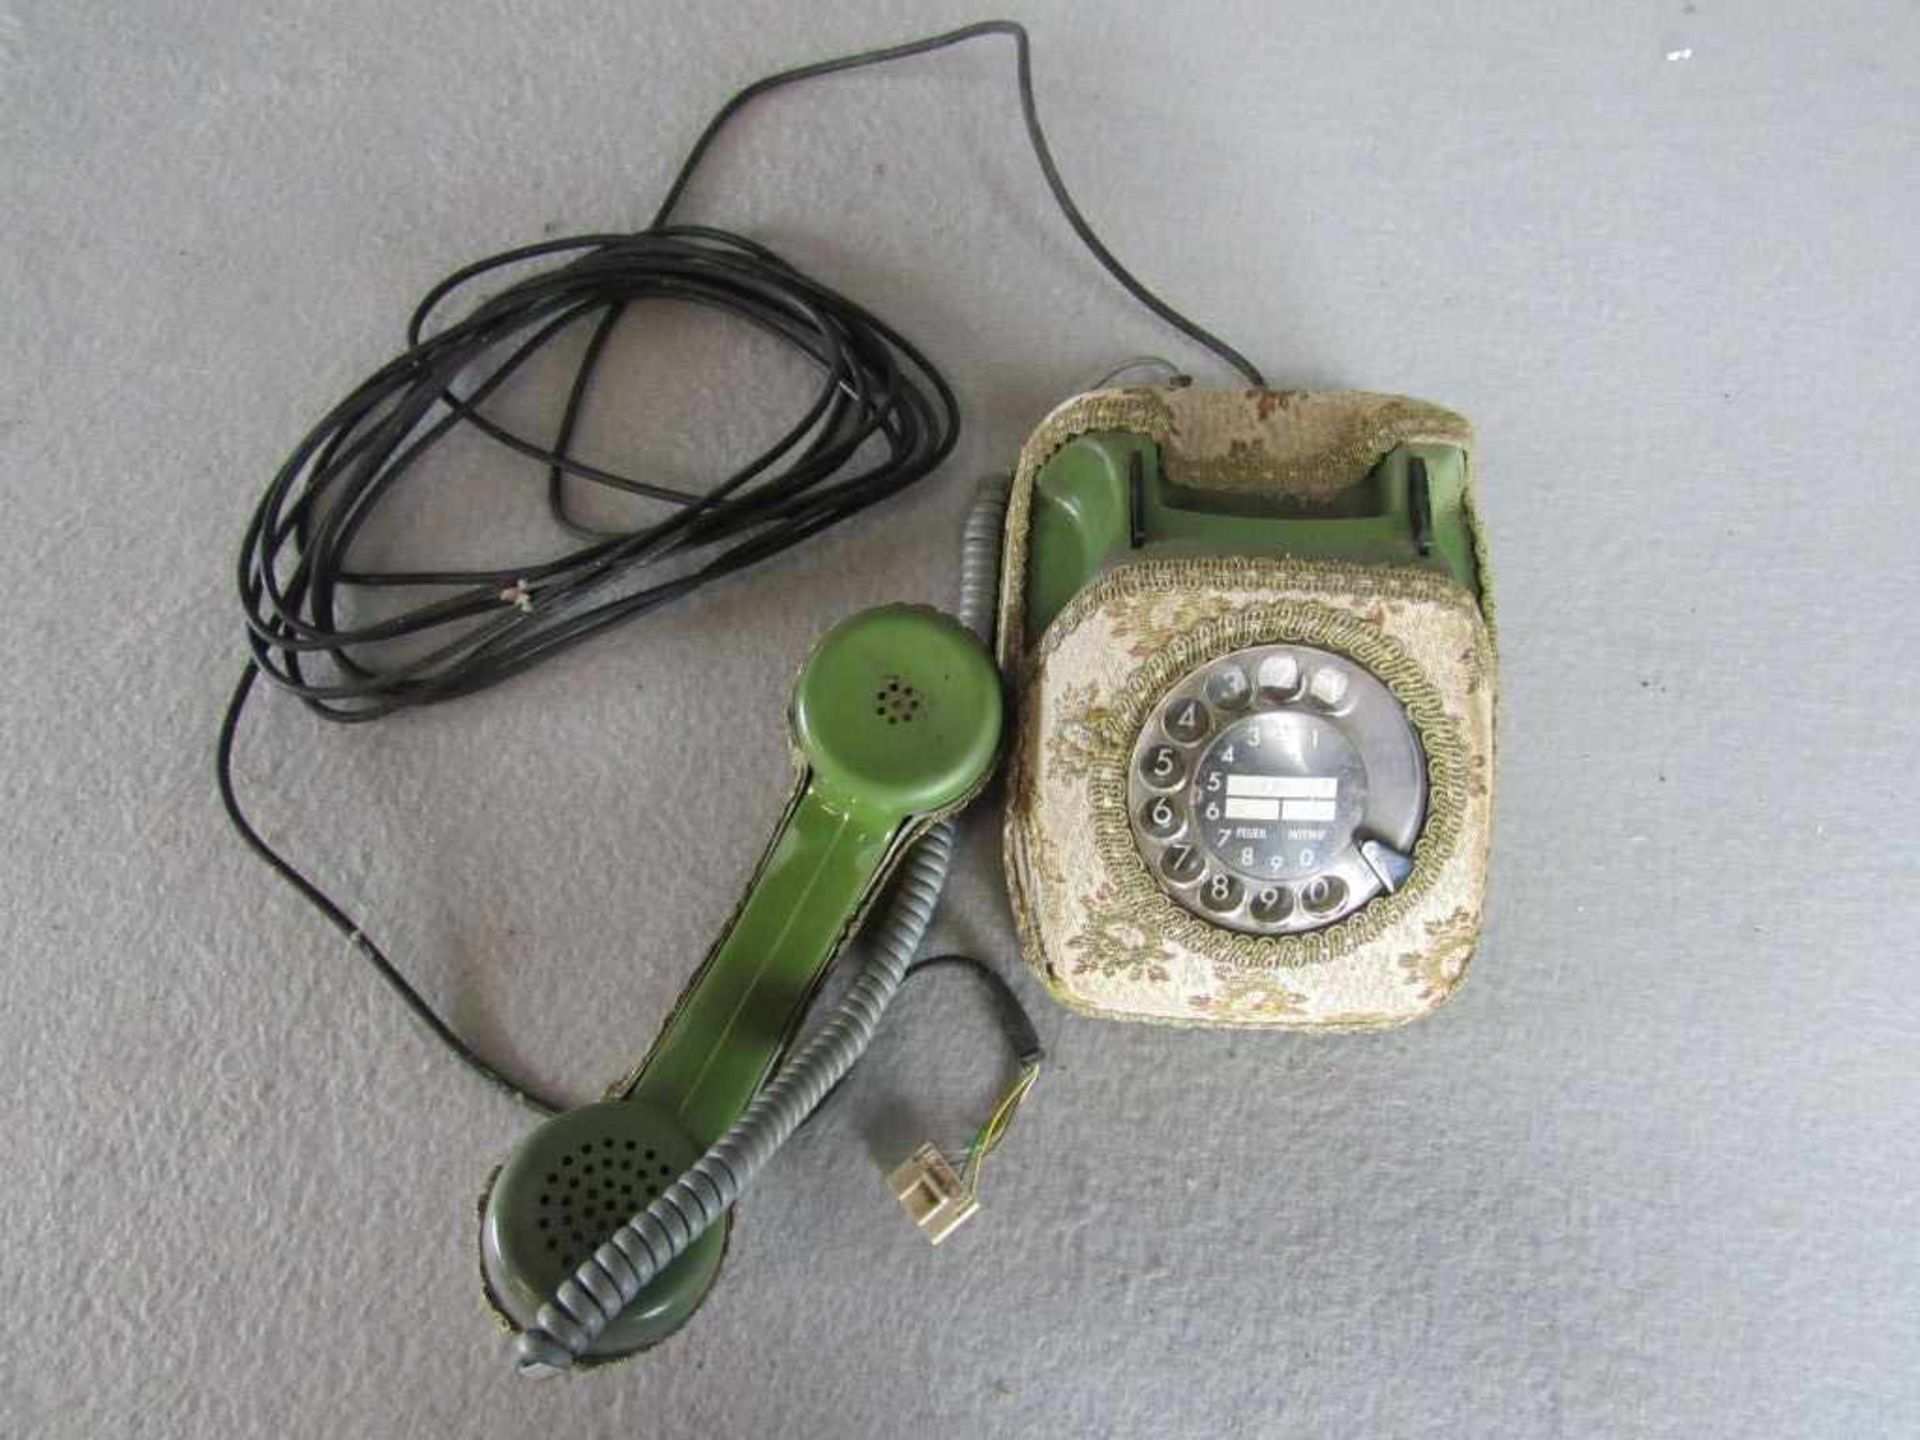 Space Age 70er Jahre Wählscheibentelefon grün mit Bezug - Image 2 of 3